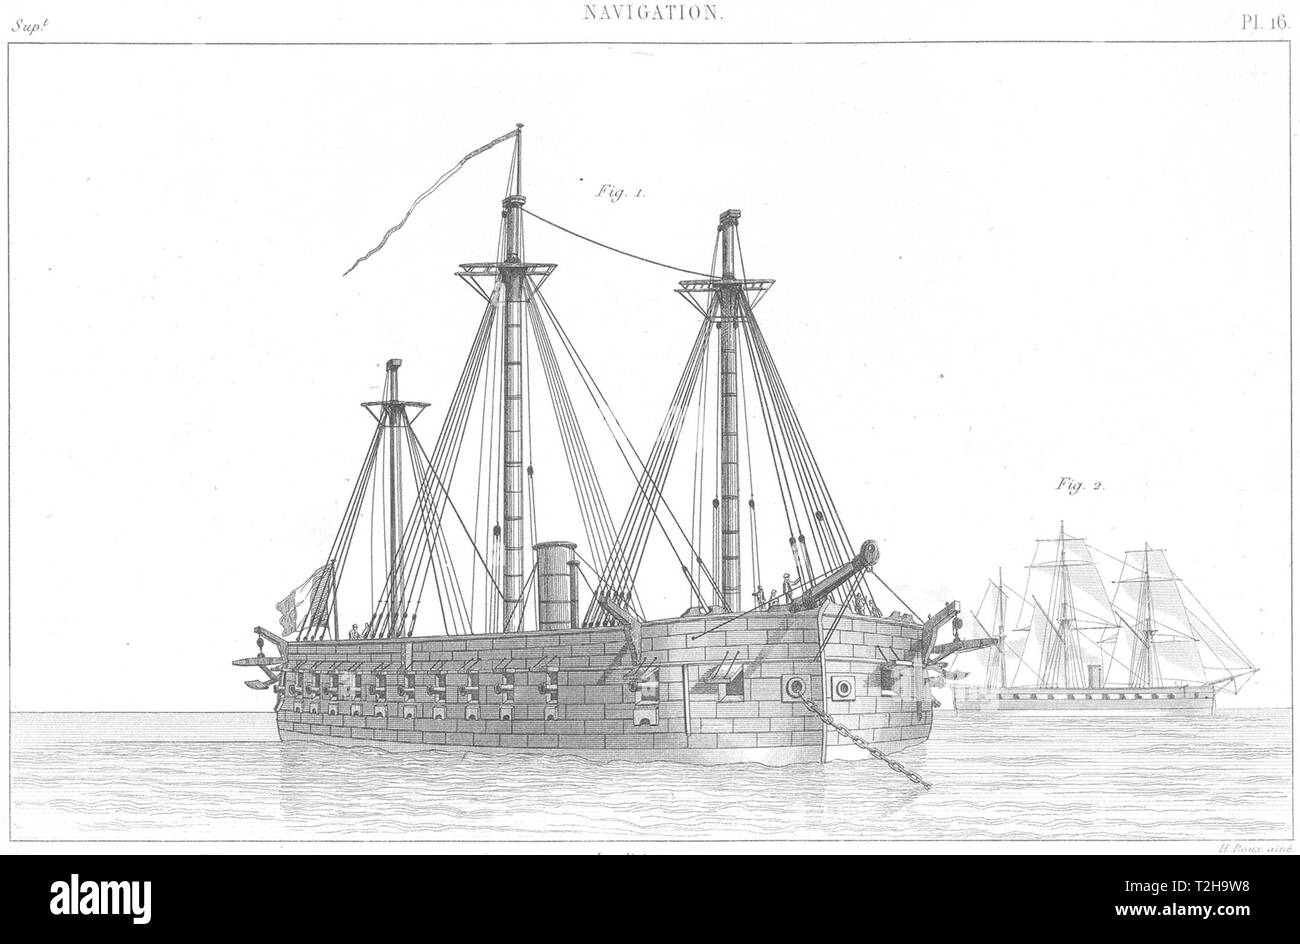 SHIPS. Devastation Batterie flottante 1 en tenue de combat; 2 a voile 1879 Stock Photo